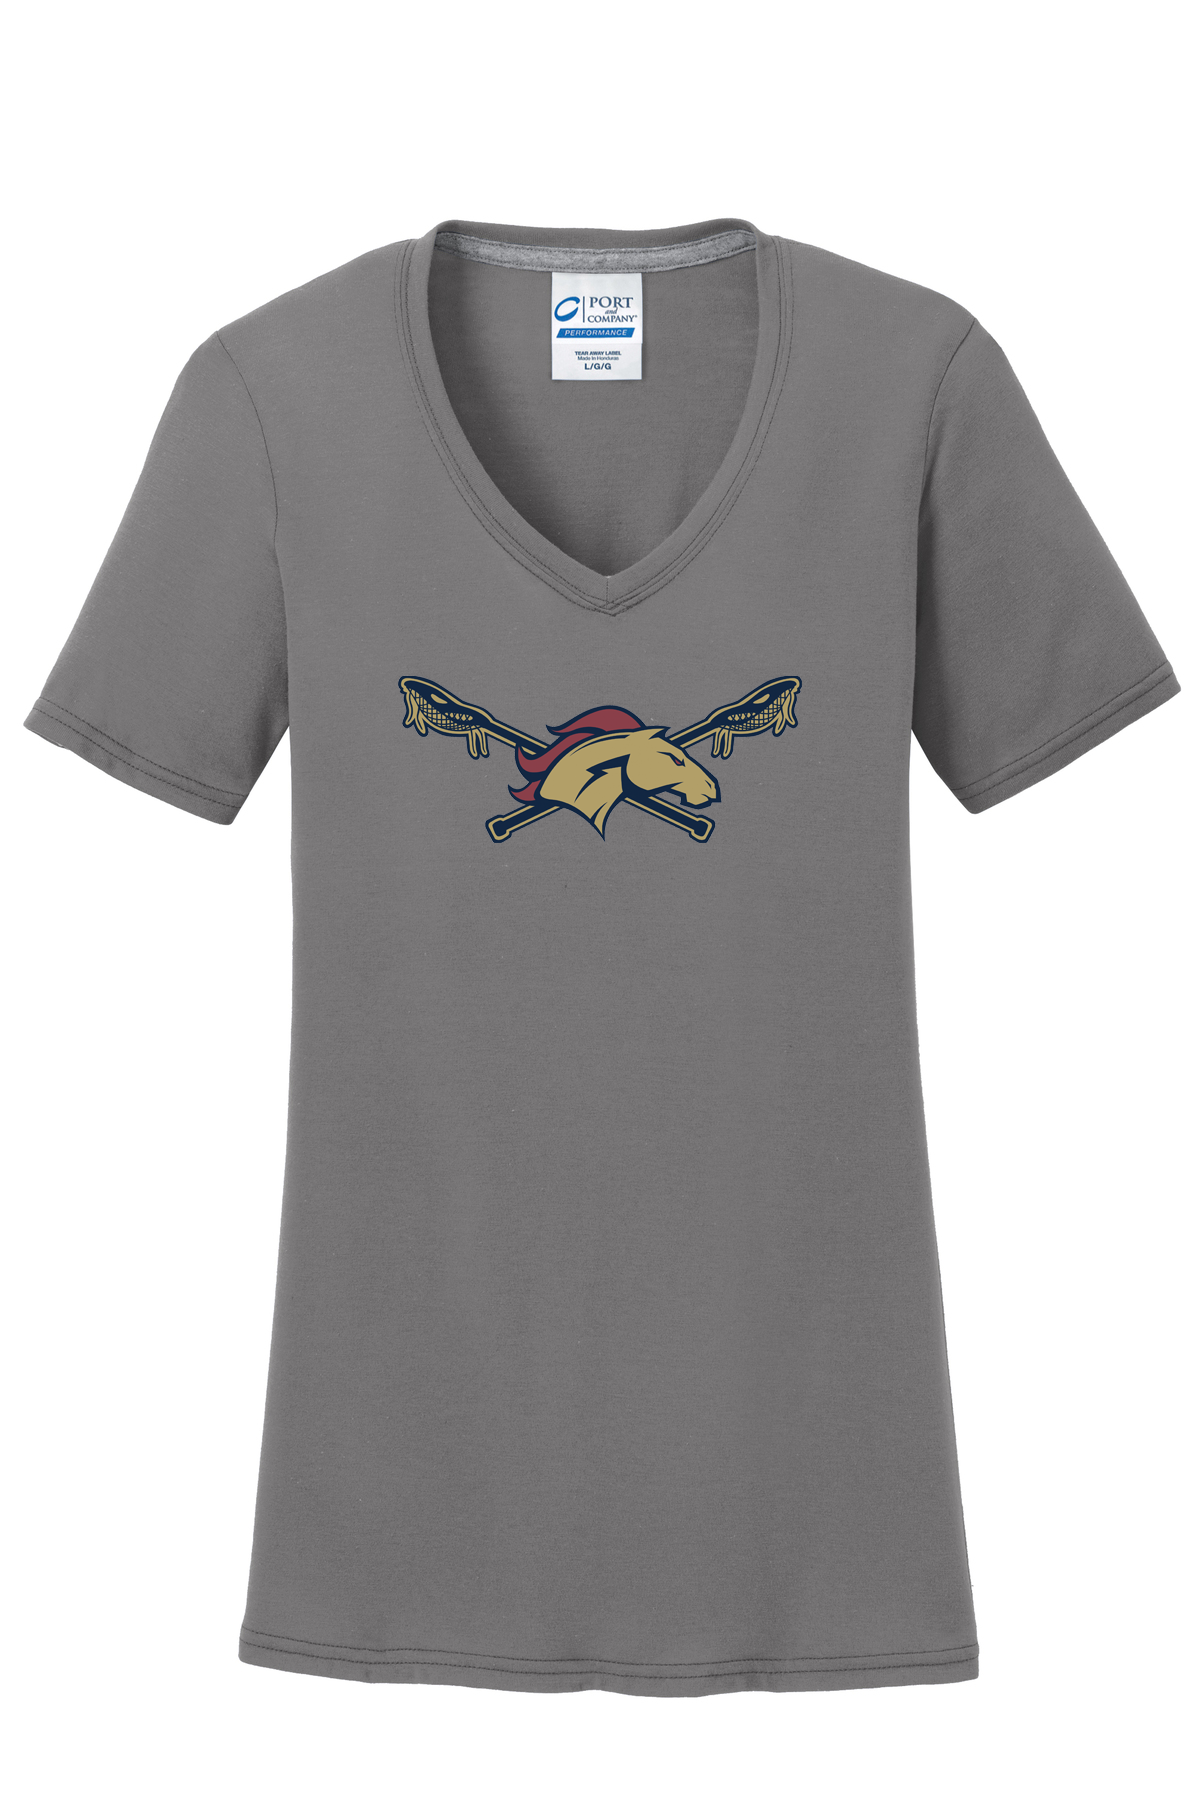 Herriman Lacrosse Grey Women's T-Shirt